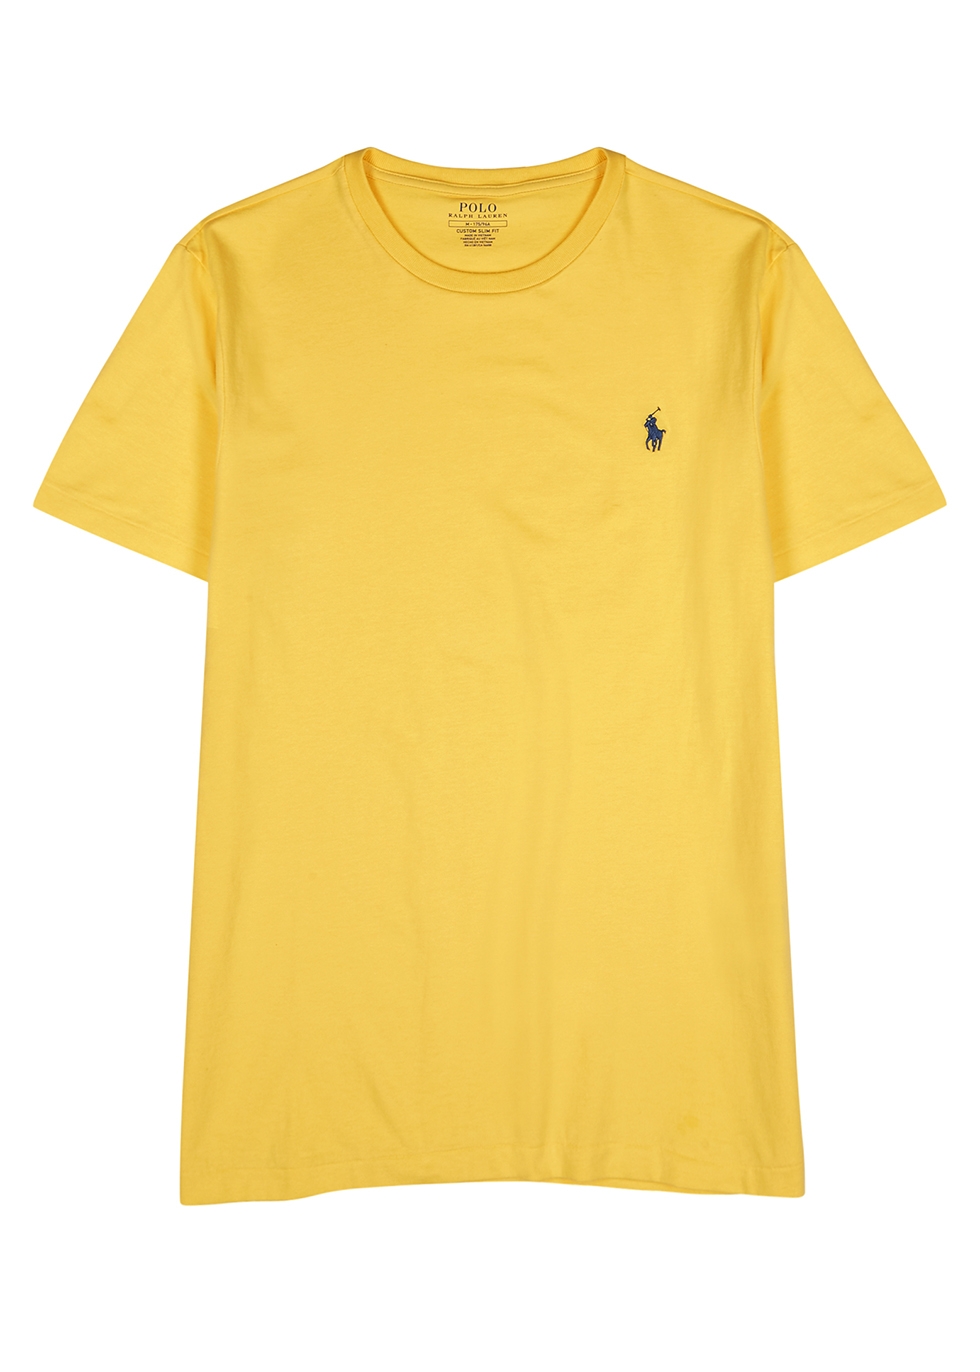 polo ralph lauren yellow t shirt